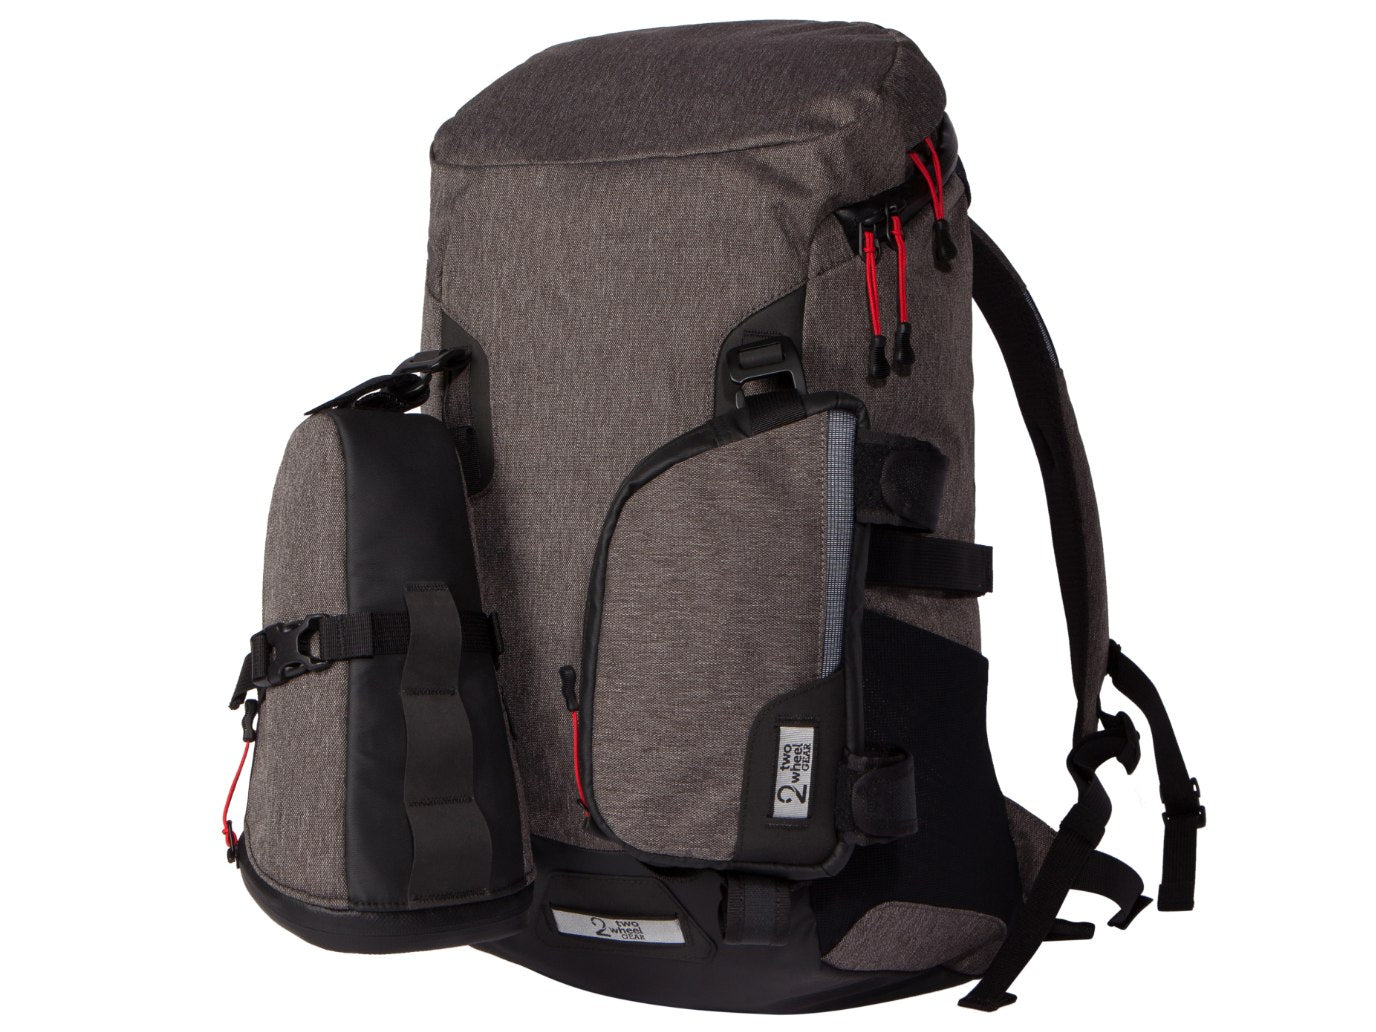 Commute Backpack Kit - 3 Bag Set